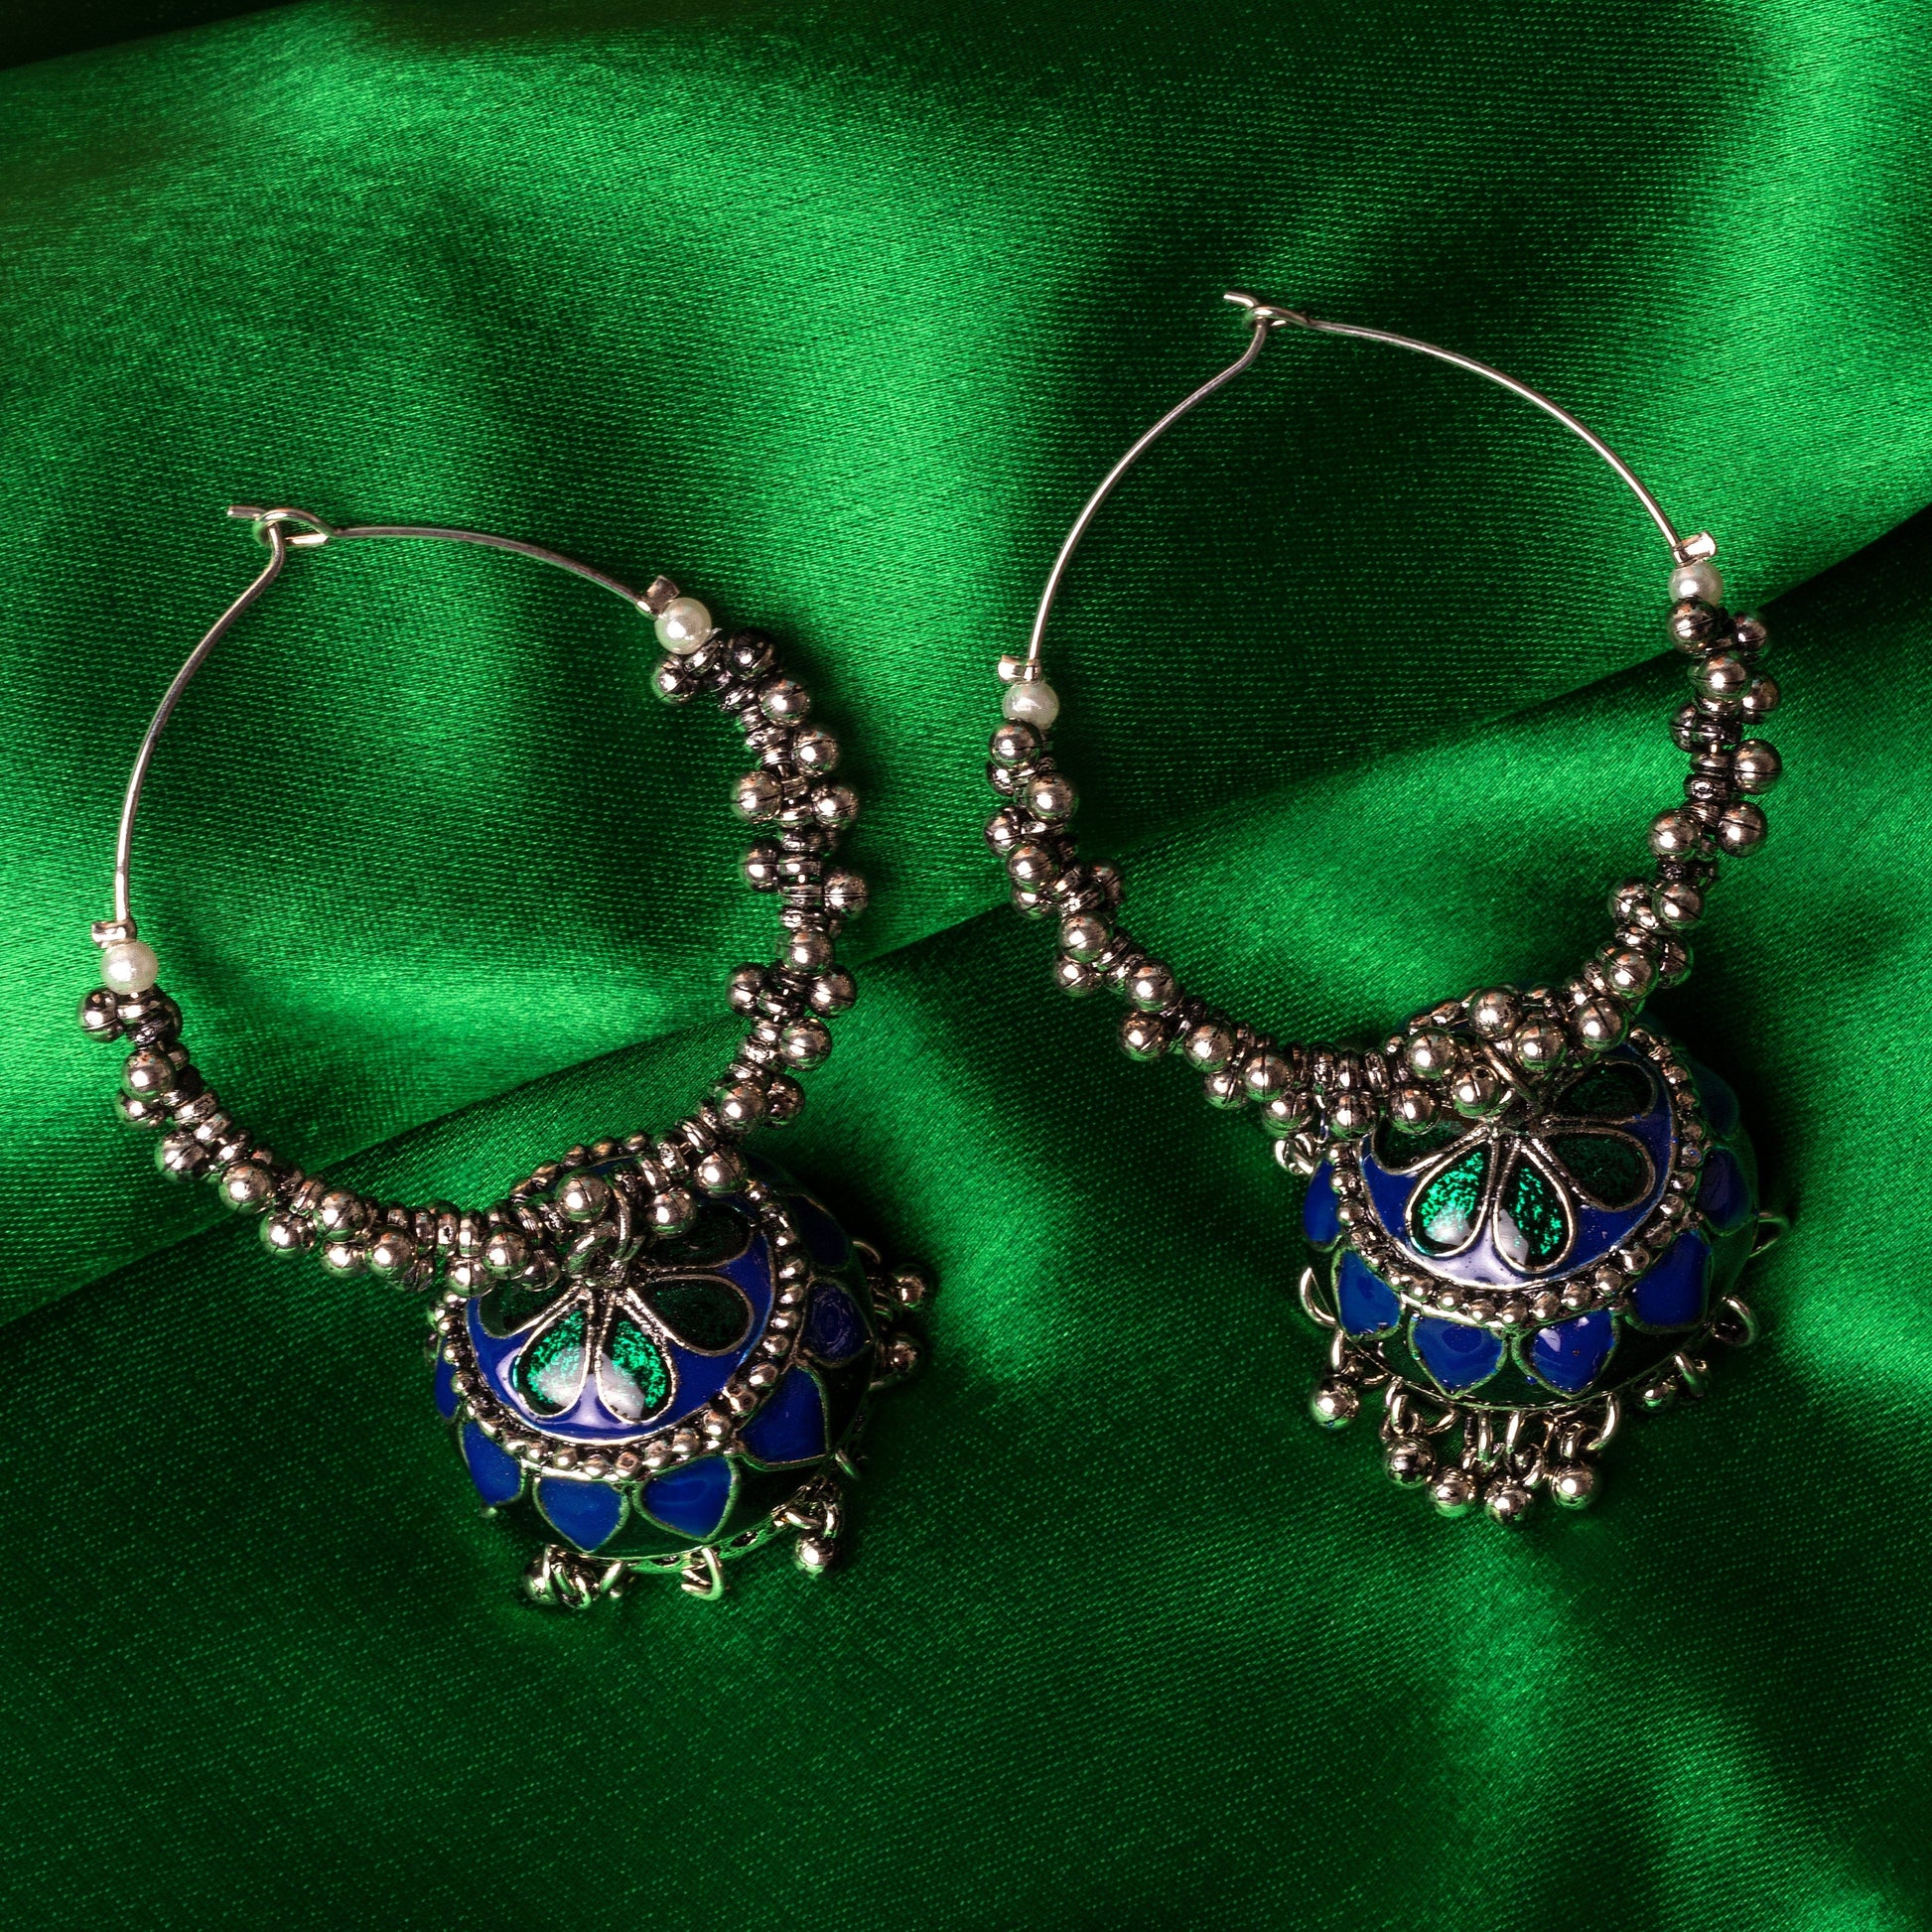 Moonstruck Oxidised Hoops Fashion Earrings For Women (Blue) - www.MoonstruckINC.com